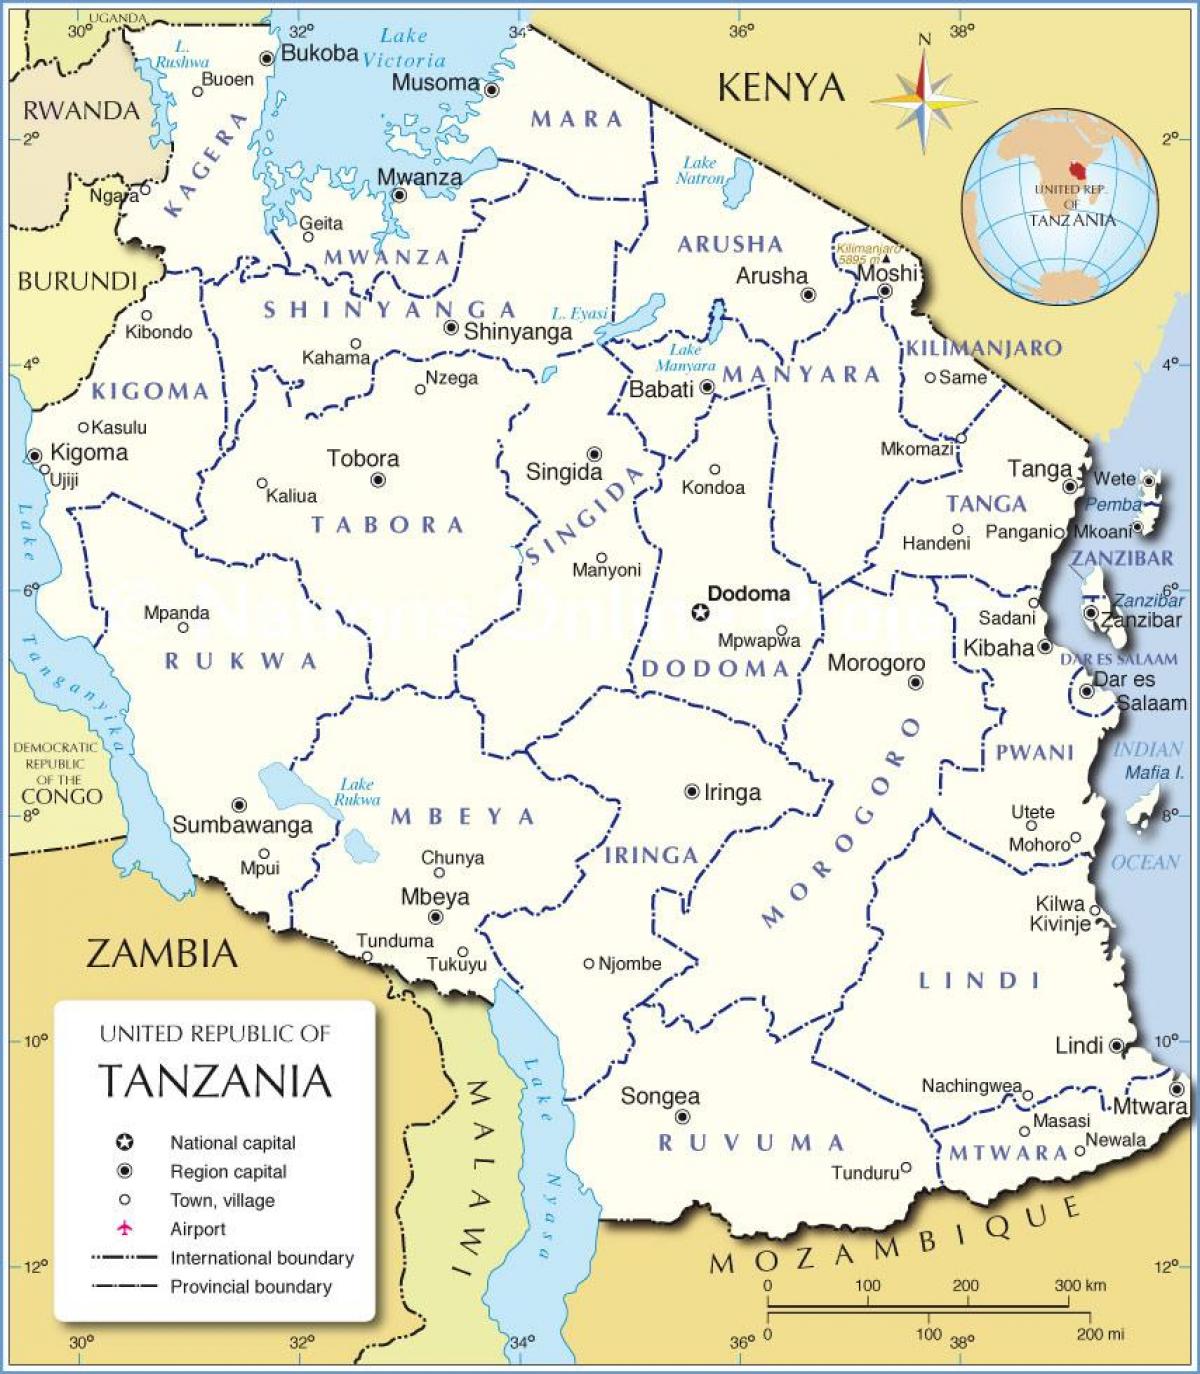 તાંઝાનિયા વહીવટી નકશો